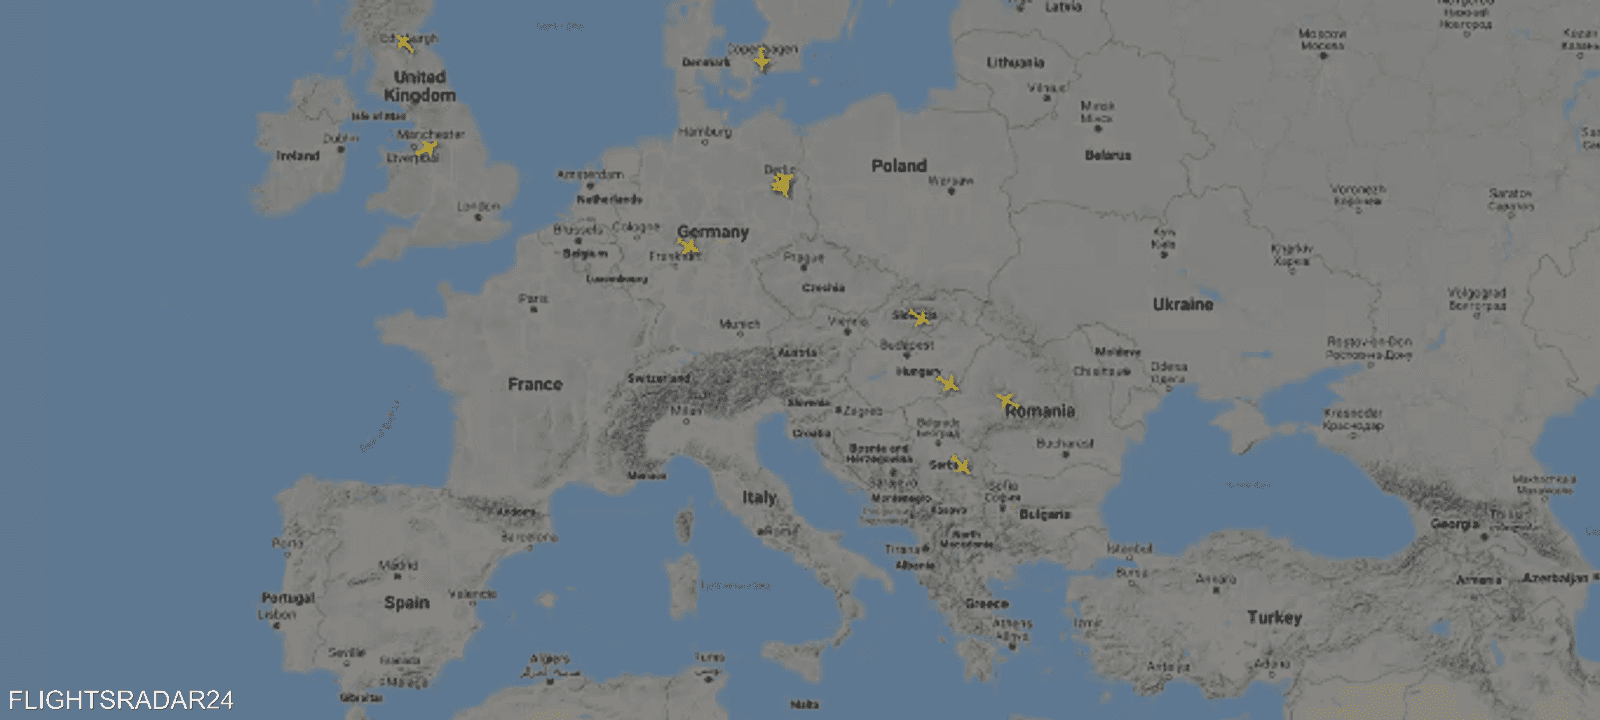 حركة الطيران منعدمة فوق أوروبا في 26 مارس